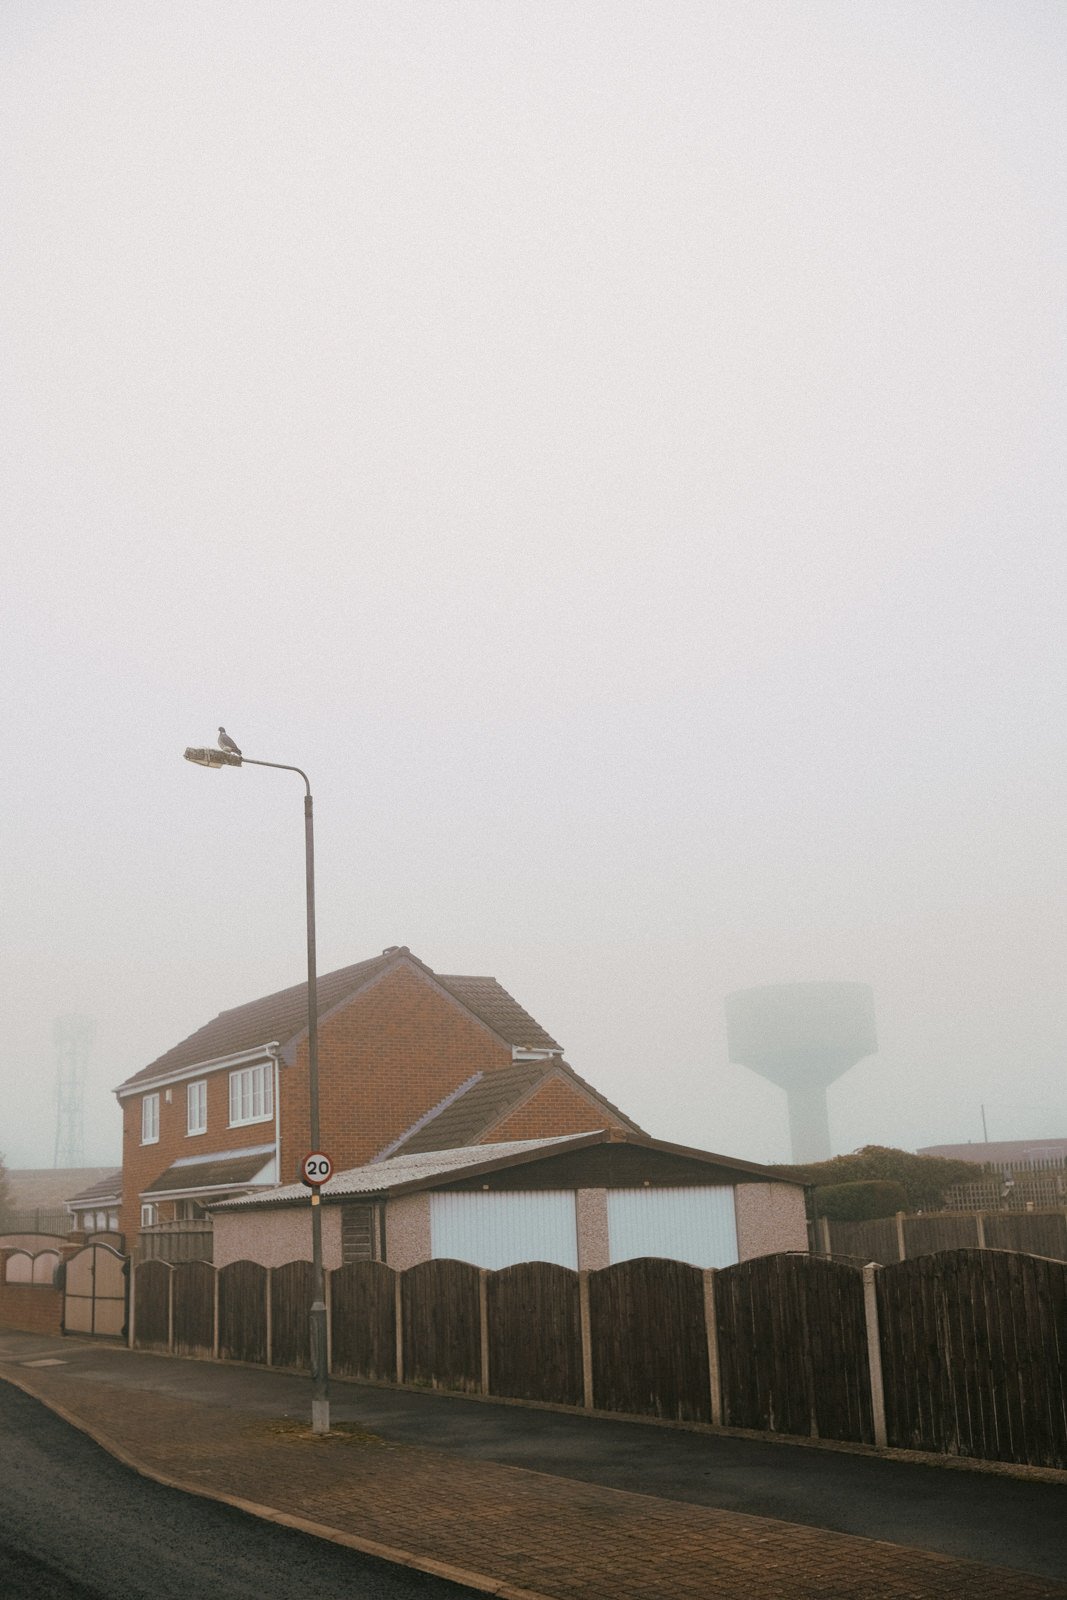 A misty street in England